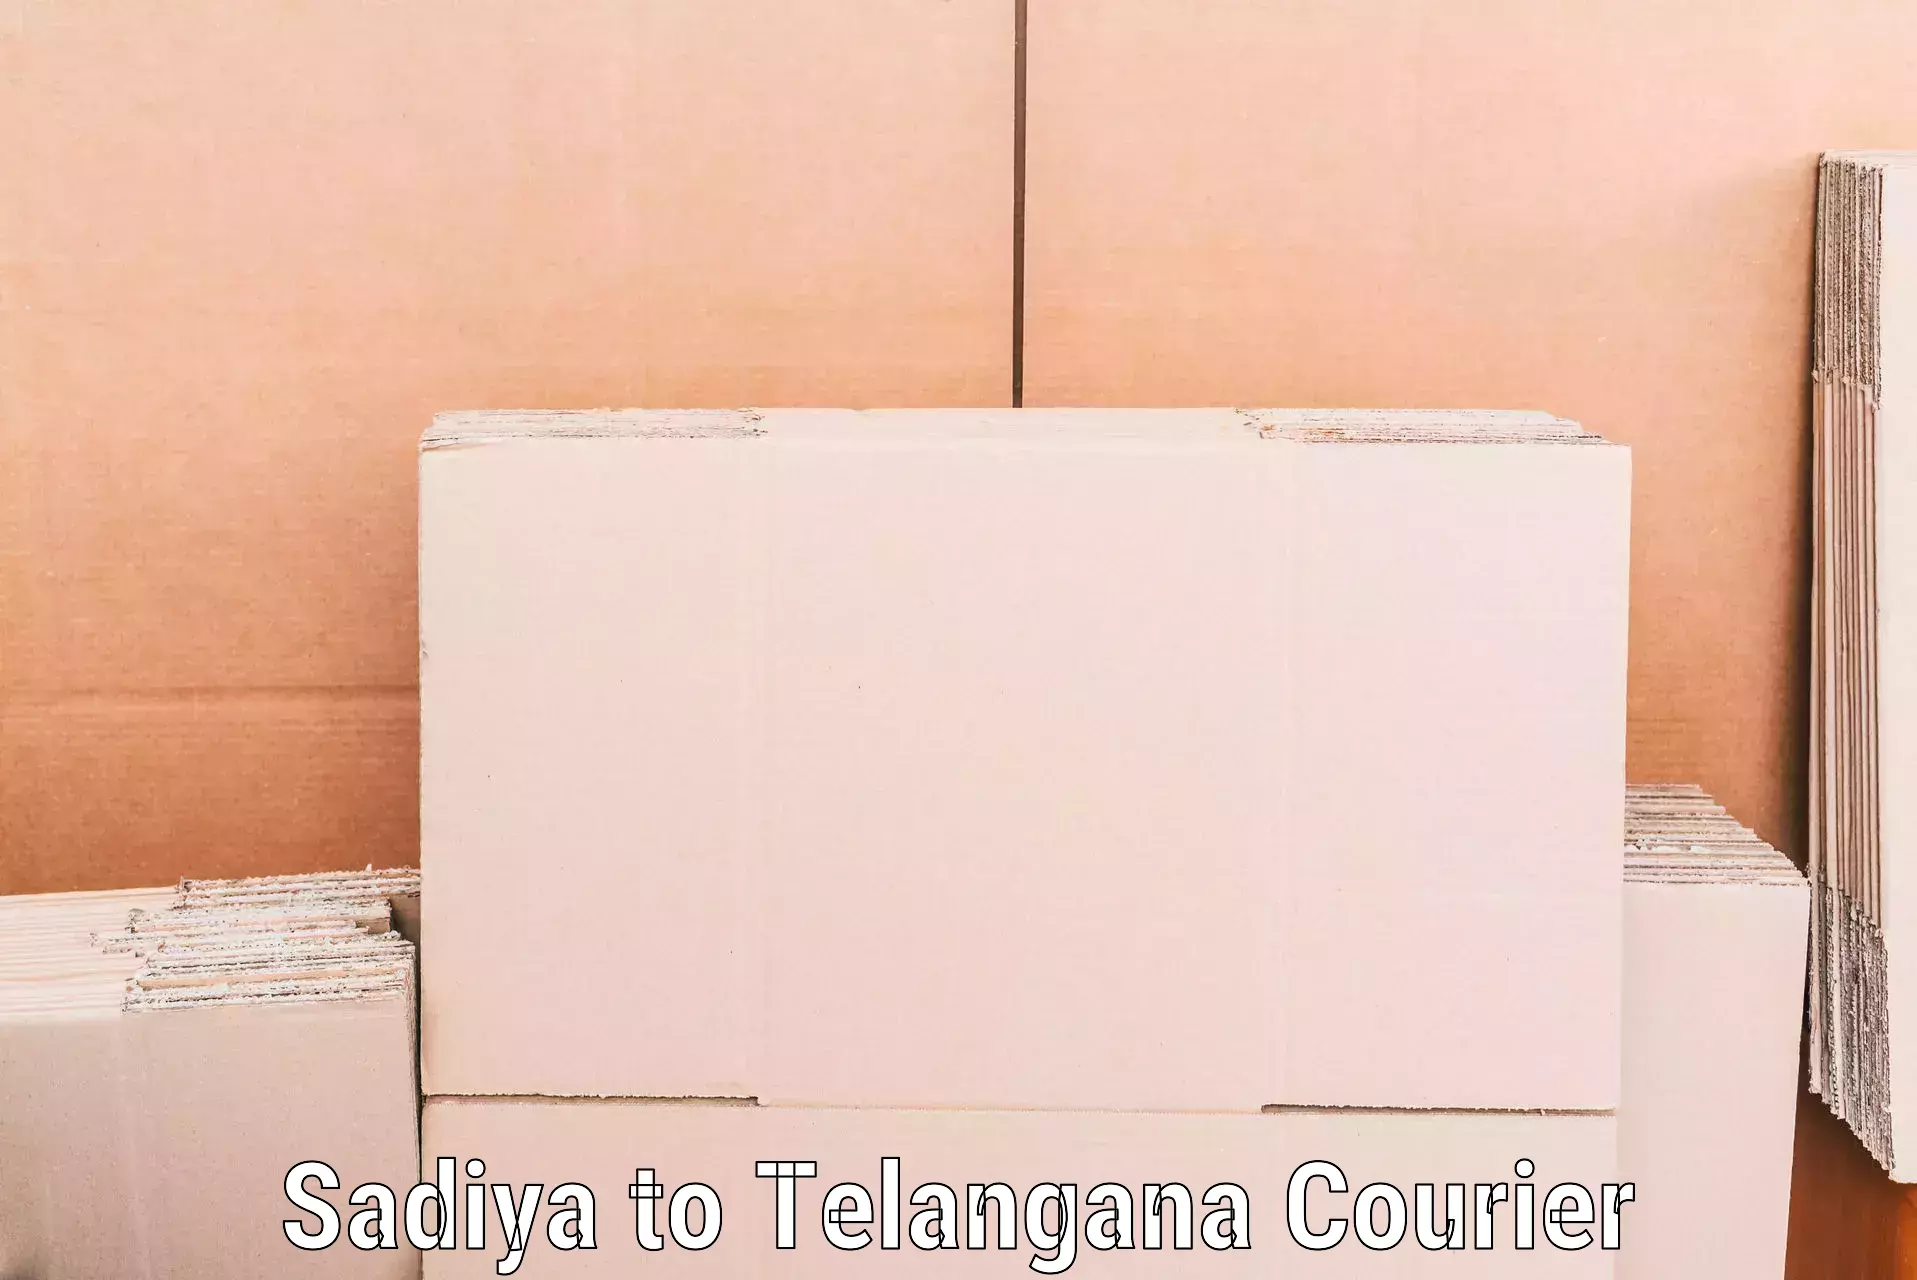 Seamless moving process in Sadiya to Banswada